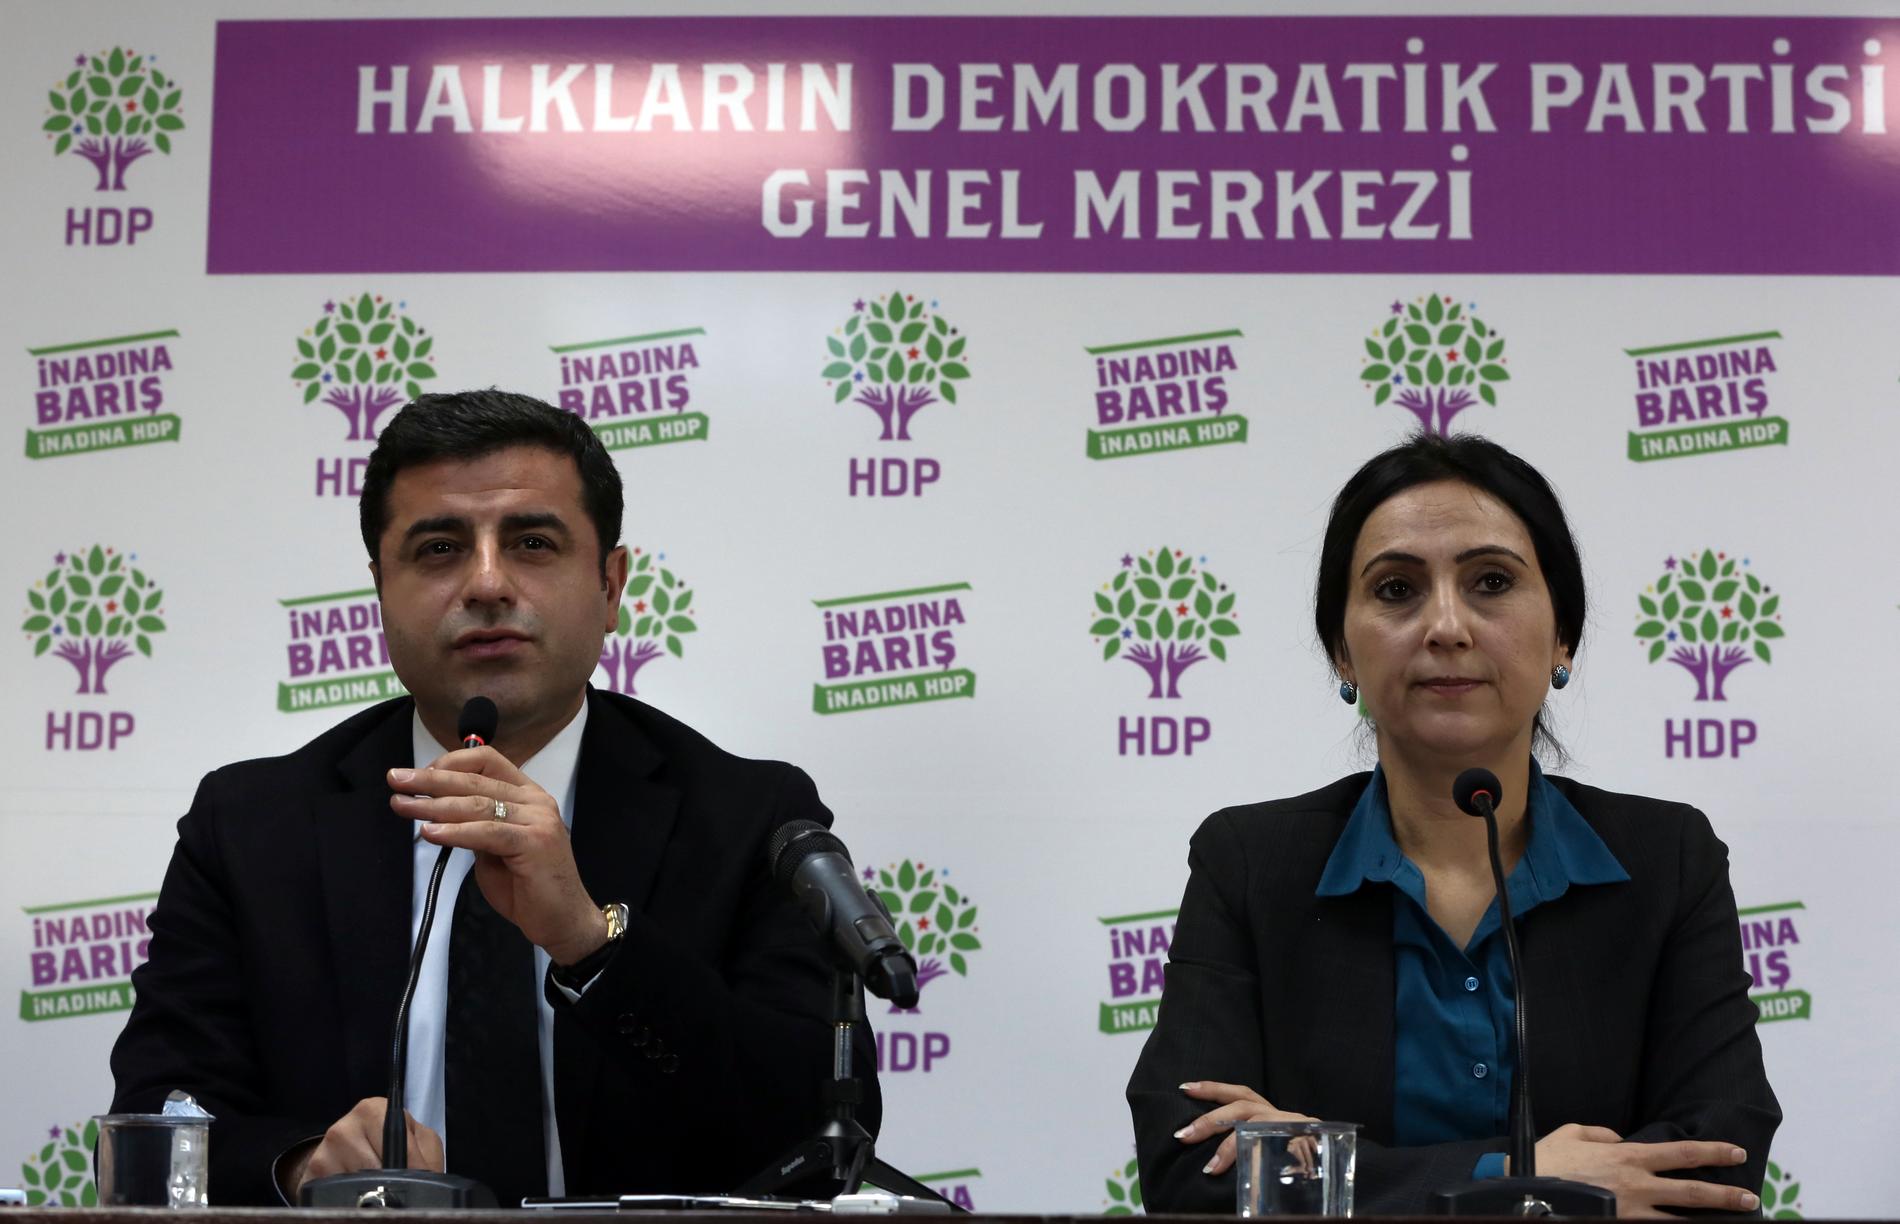 Selahattin Demirtas och Figen Yüksekdag på en presskonferens i Ankara i november 2015.